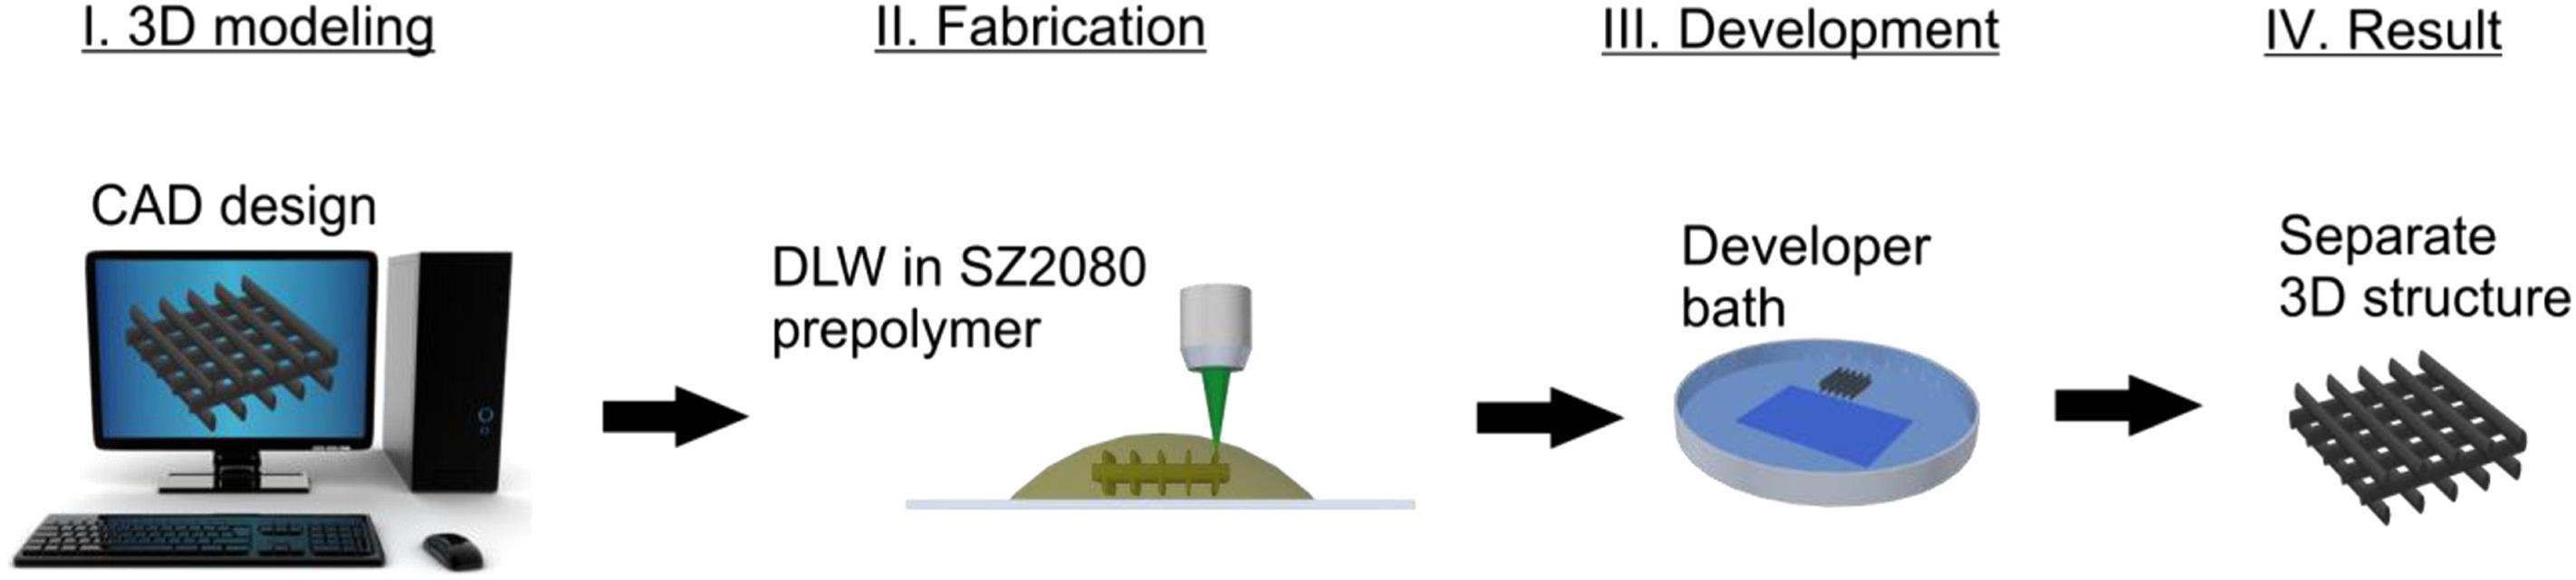 Darinių formavimo tiesioginio lazerinio rašymo būdu žingsniai: I–modeliavimas, II–formavimas, III–ryškinimas, IV–3D mikrostruktūrizuotas karkasas iš SZ2080 biologiškai suderinamos medžiagos.